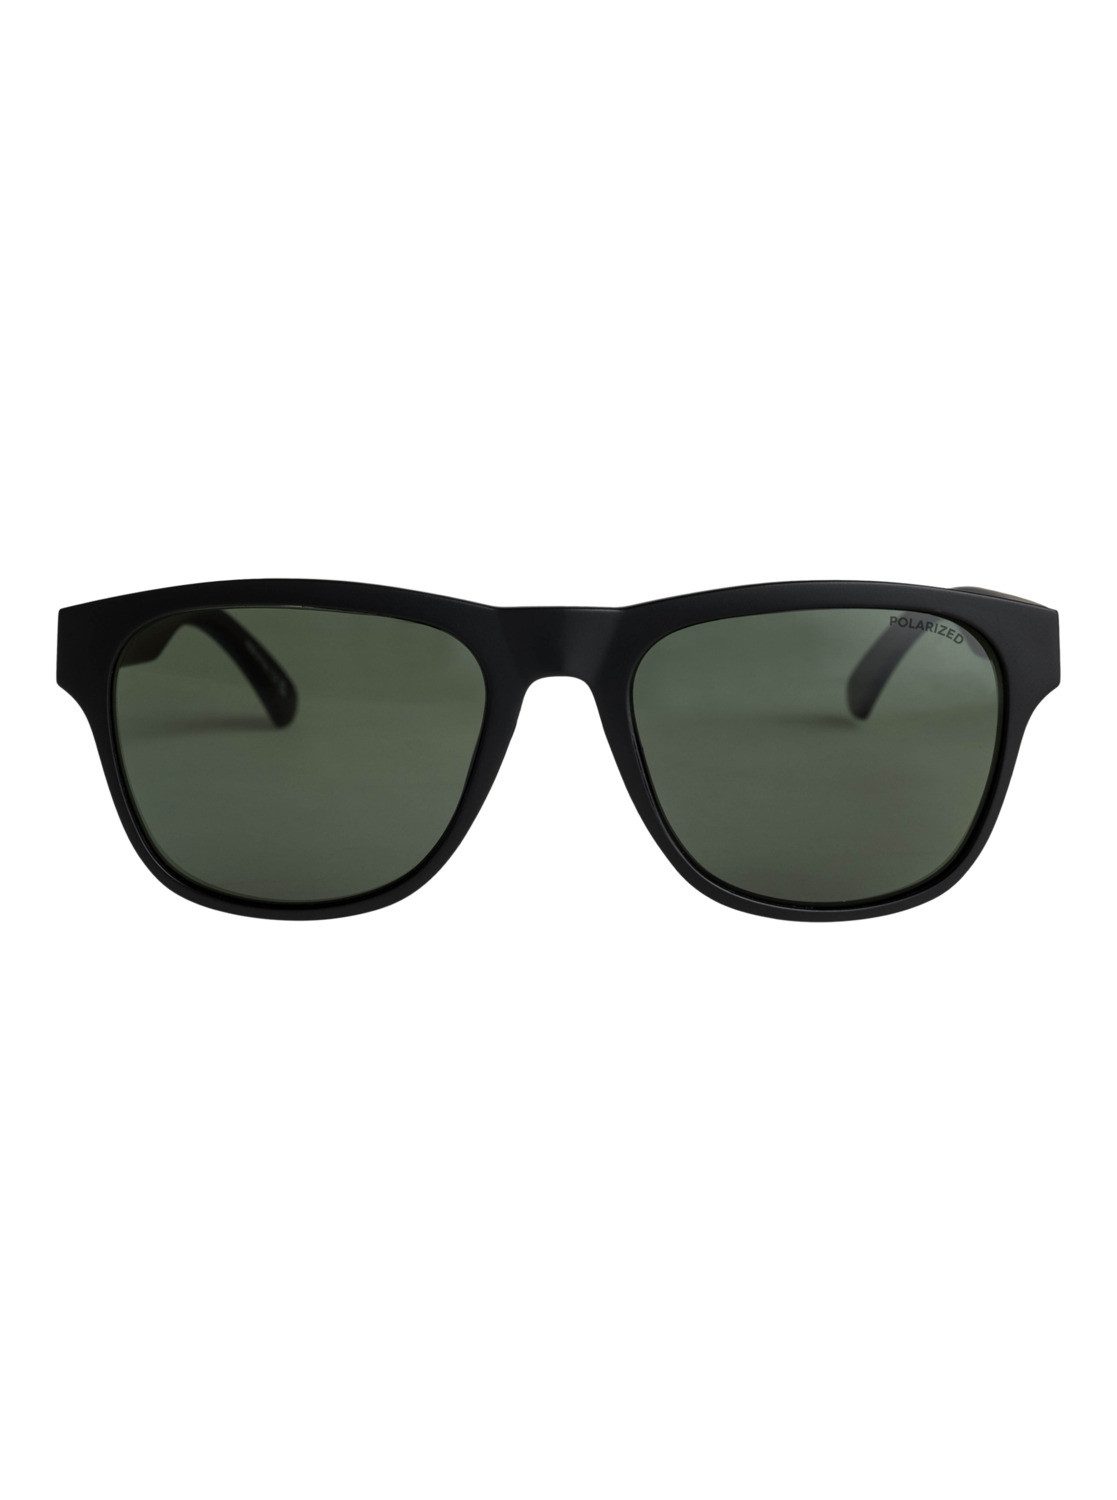 Quiksilver Plz Sonnenbrille Black/Green Polarized Tagger